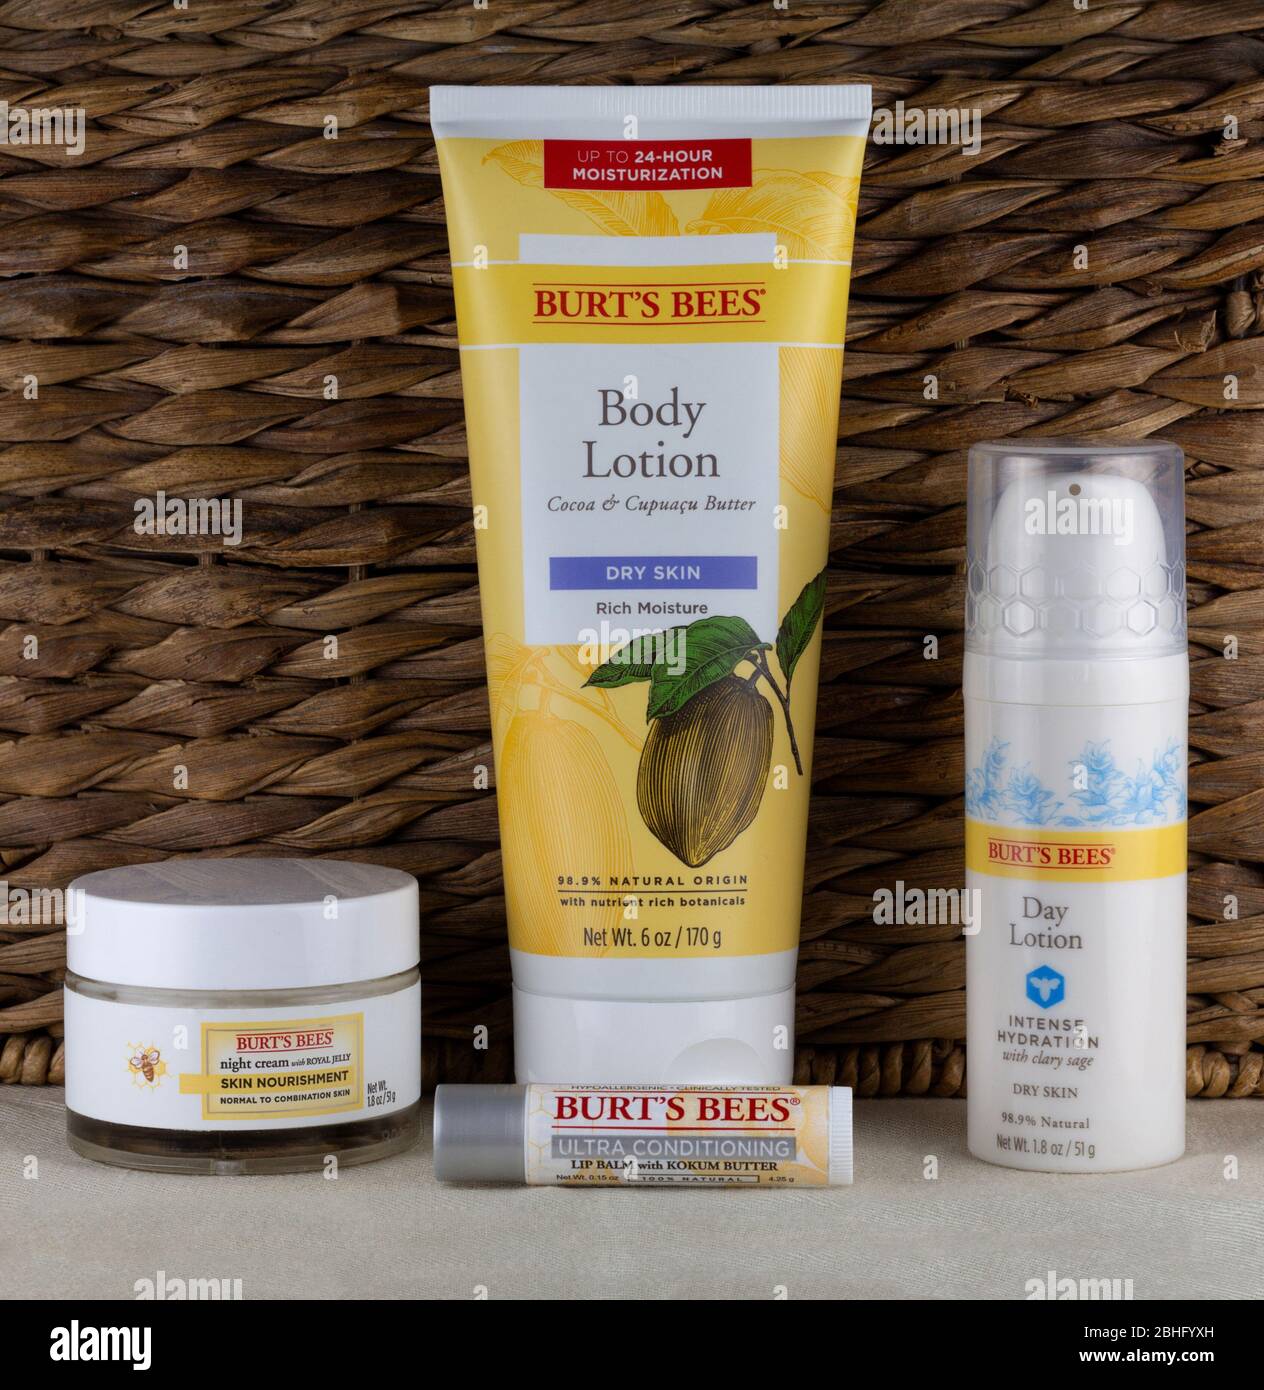 Editorial ilustrativa de productos para el cuidado de la piel de la Marca Burt's Bees, elaborados con ingredientes naturales y un procesamiento mínimo Foto de stock